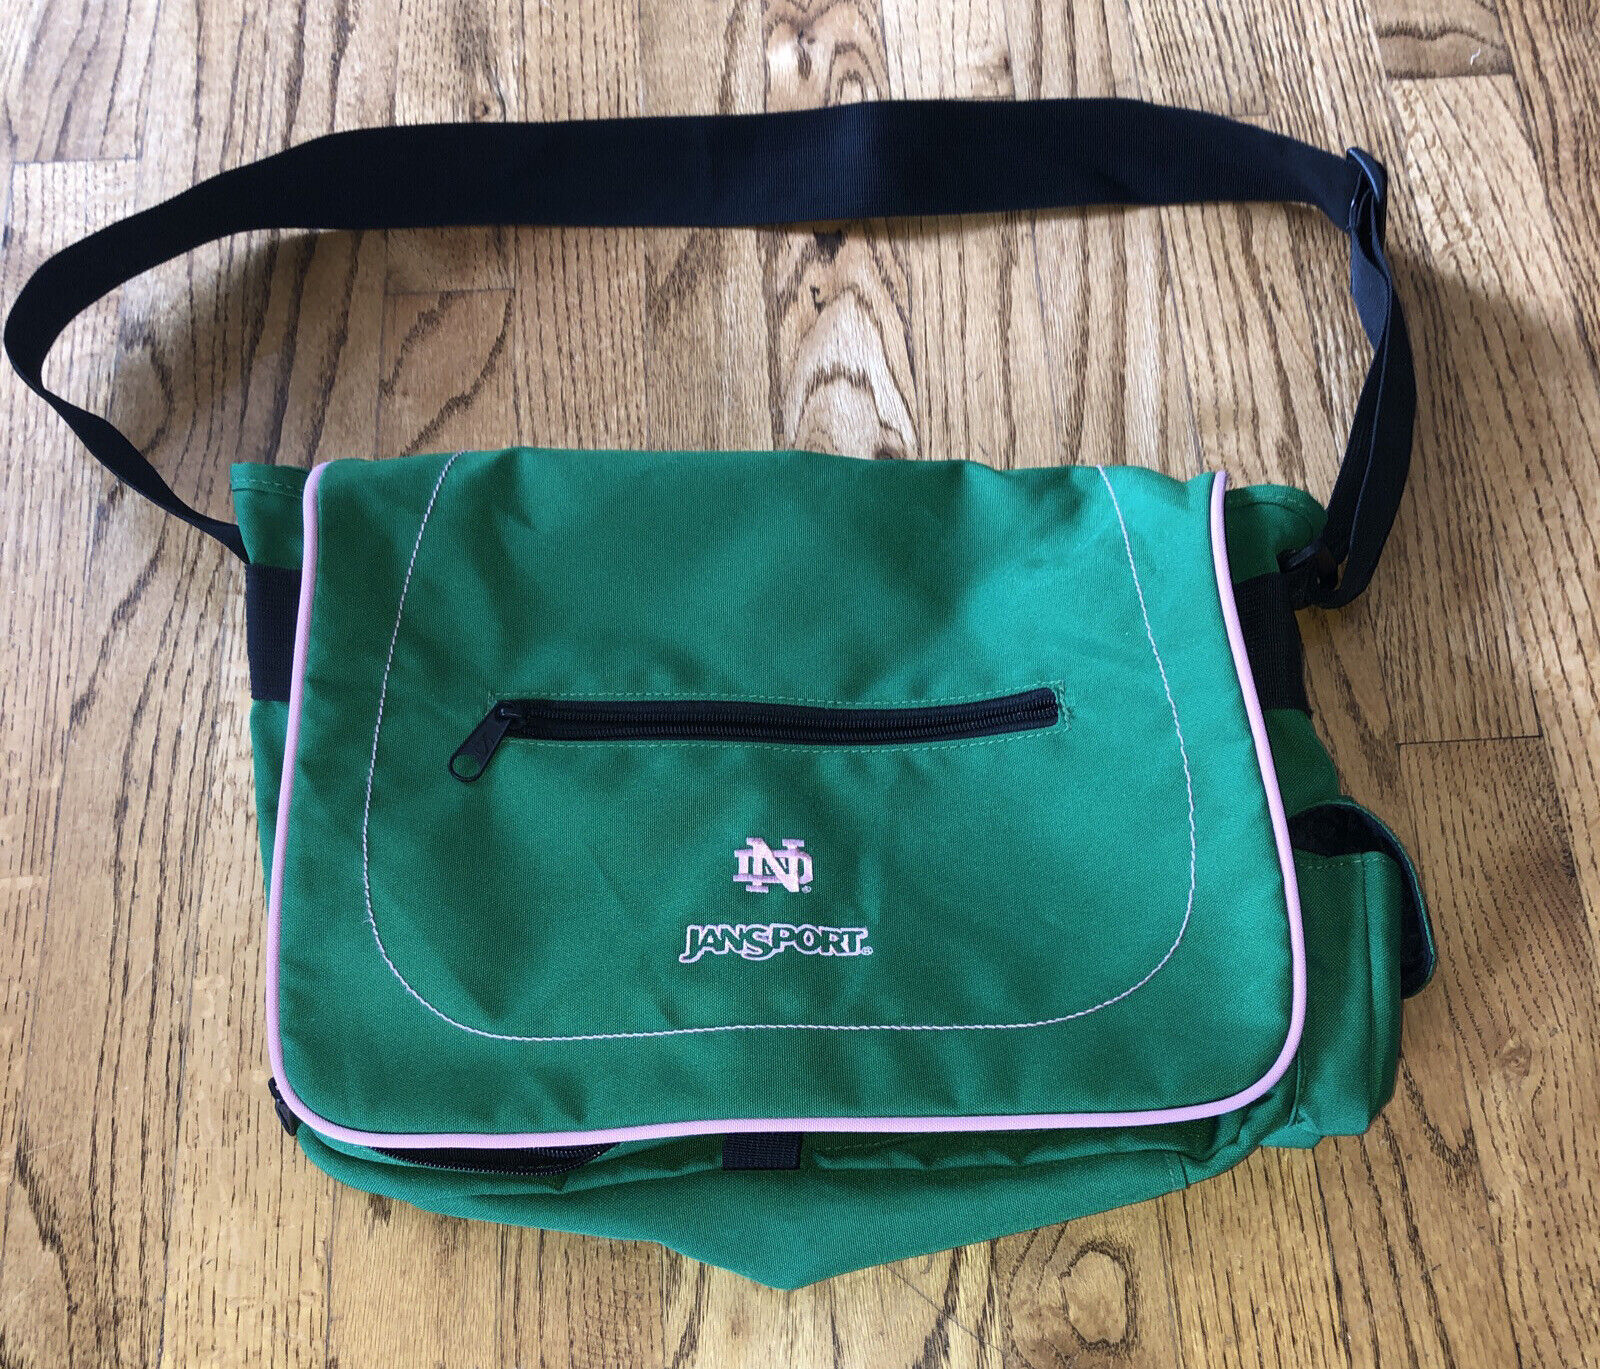 JANSPORT University of Notre Dame Messenger Bag Laptop Computer Bag Pink Green